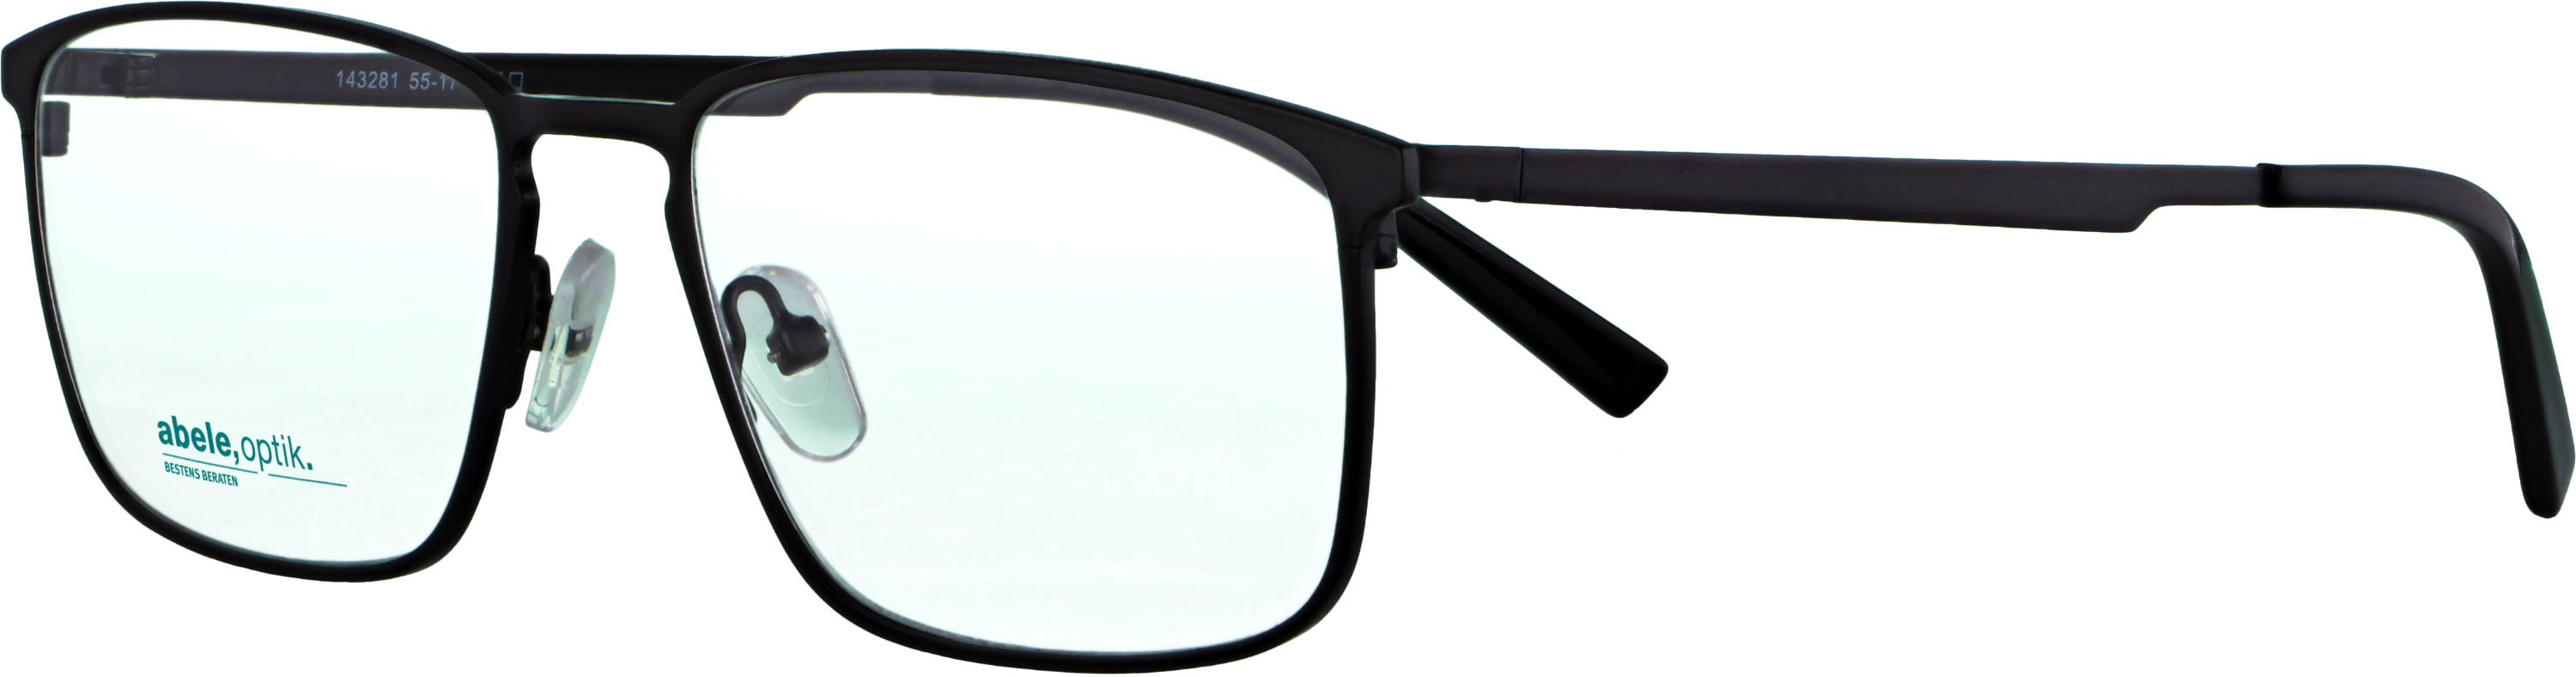 Das Bild zeigt die Korrektionsbrille 143281 von der Marke Abele Optik in schwarz matt.